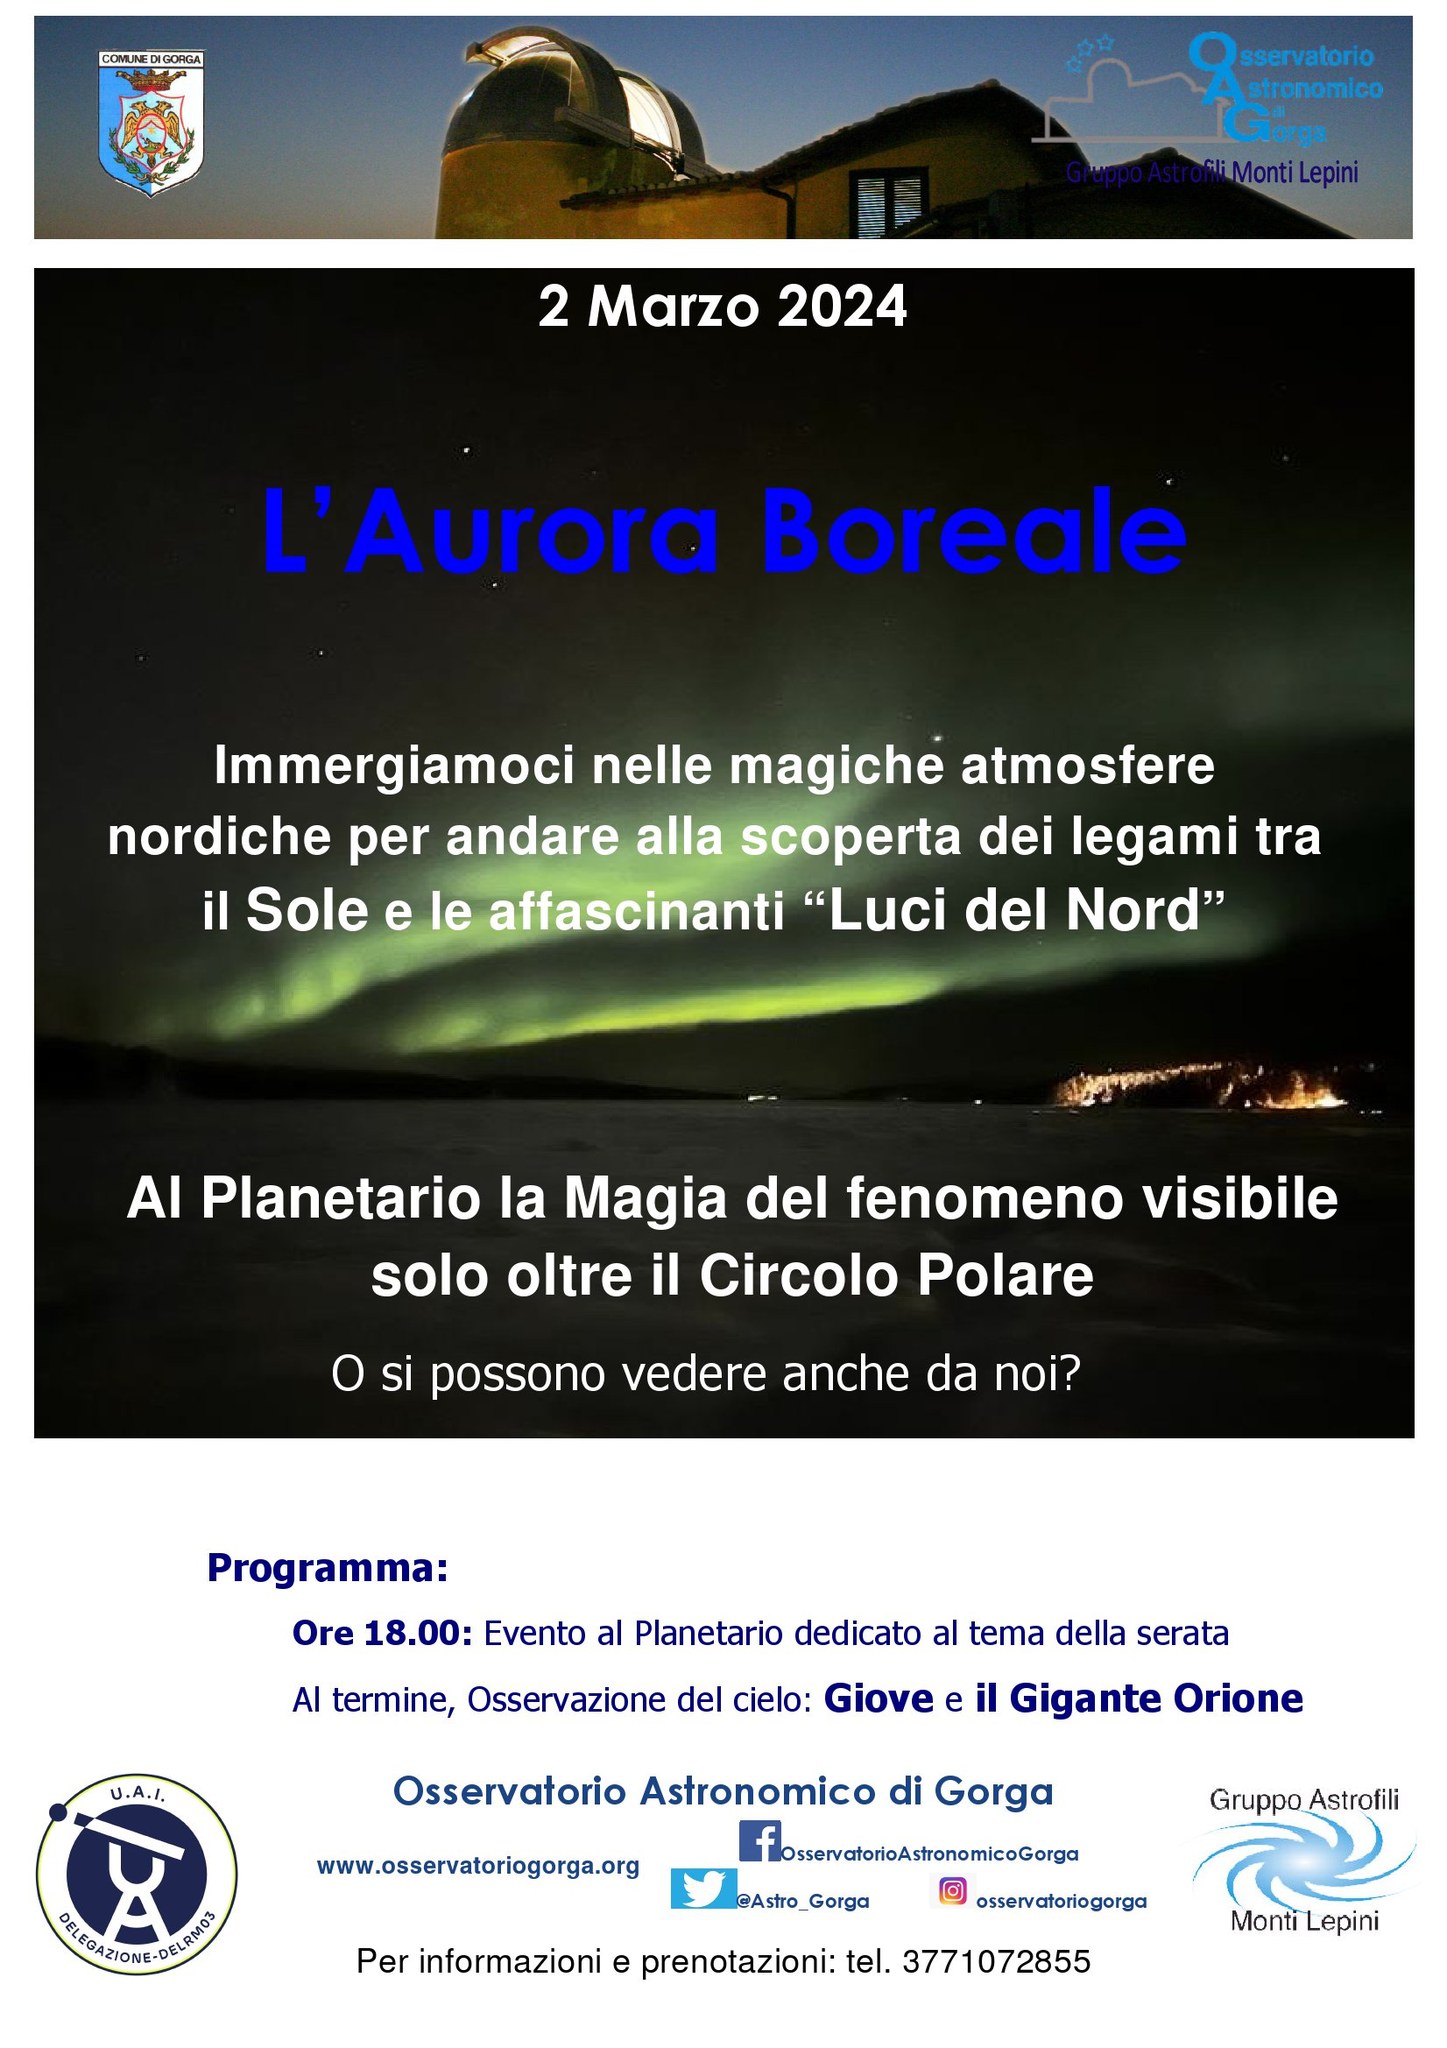 Gorga: L'Aurora Boreale @ Osservatorio Astronomico